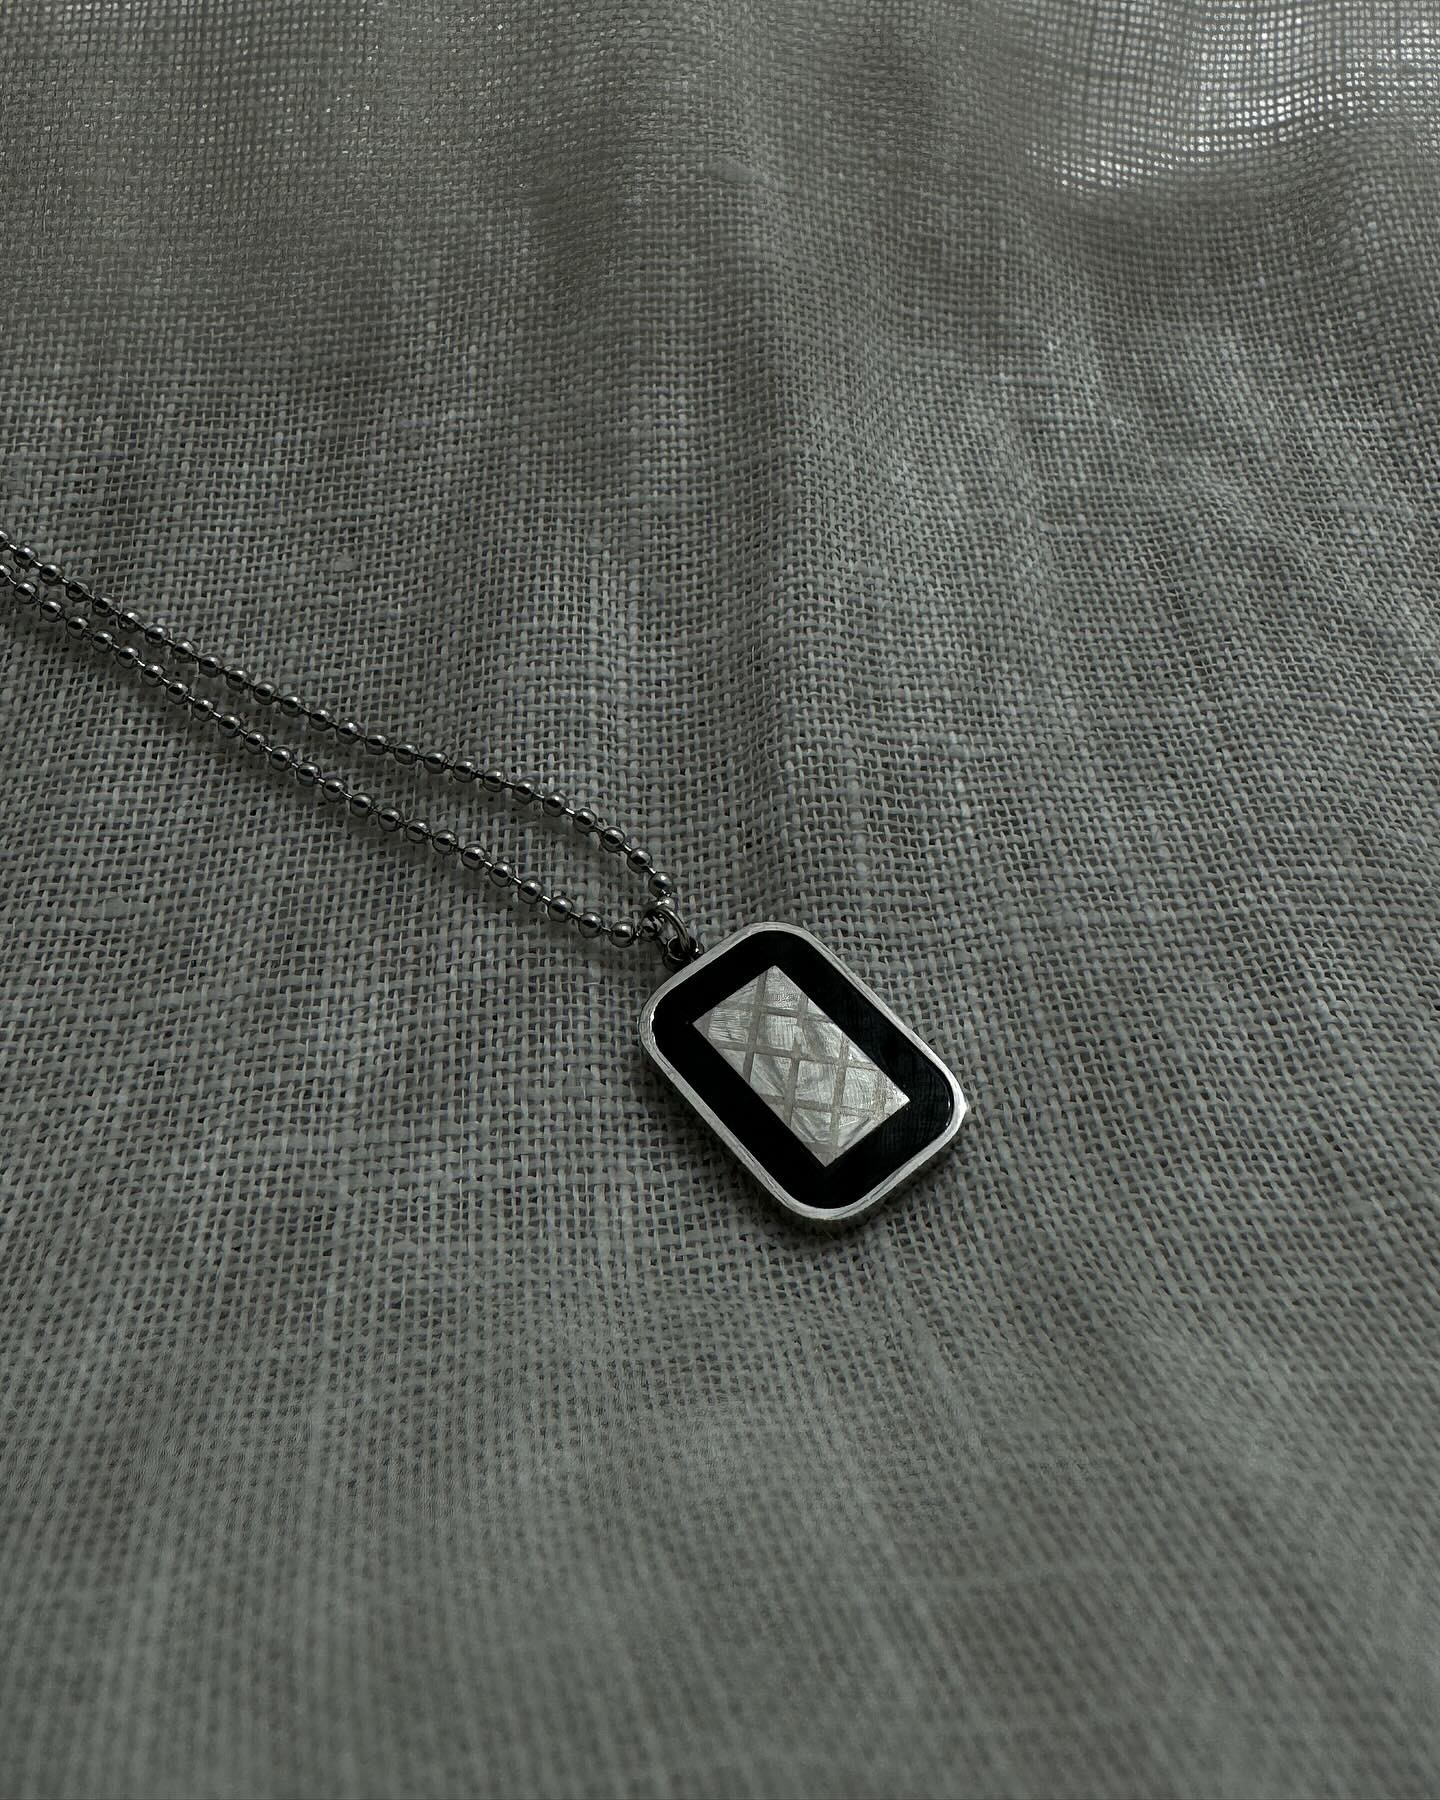 Black-Silver Square Necklace